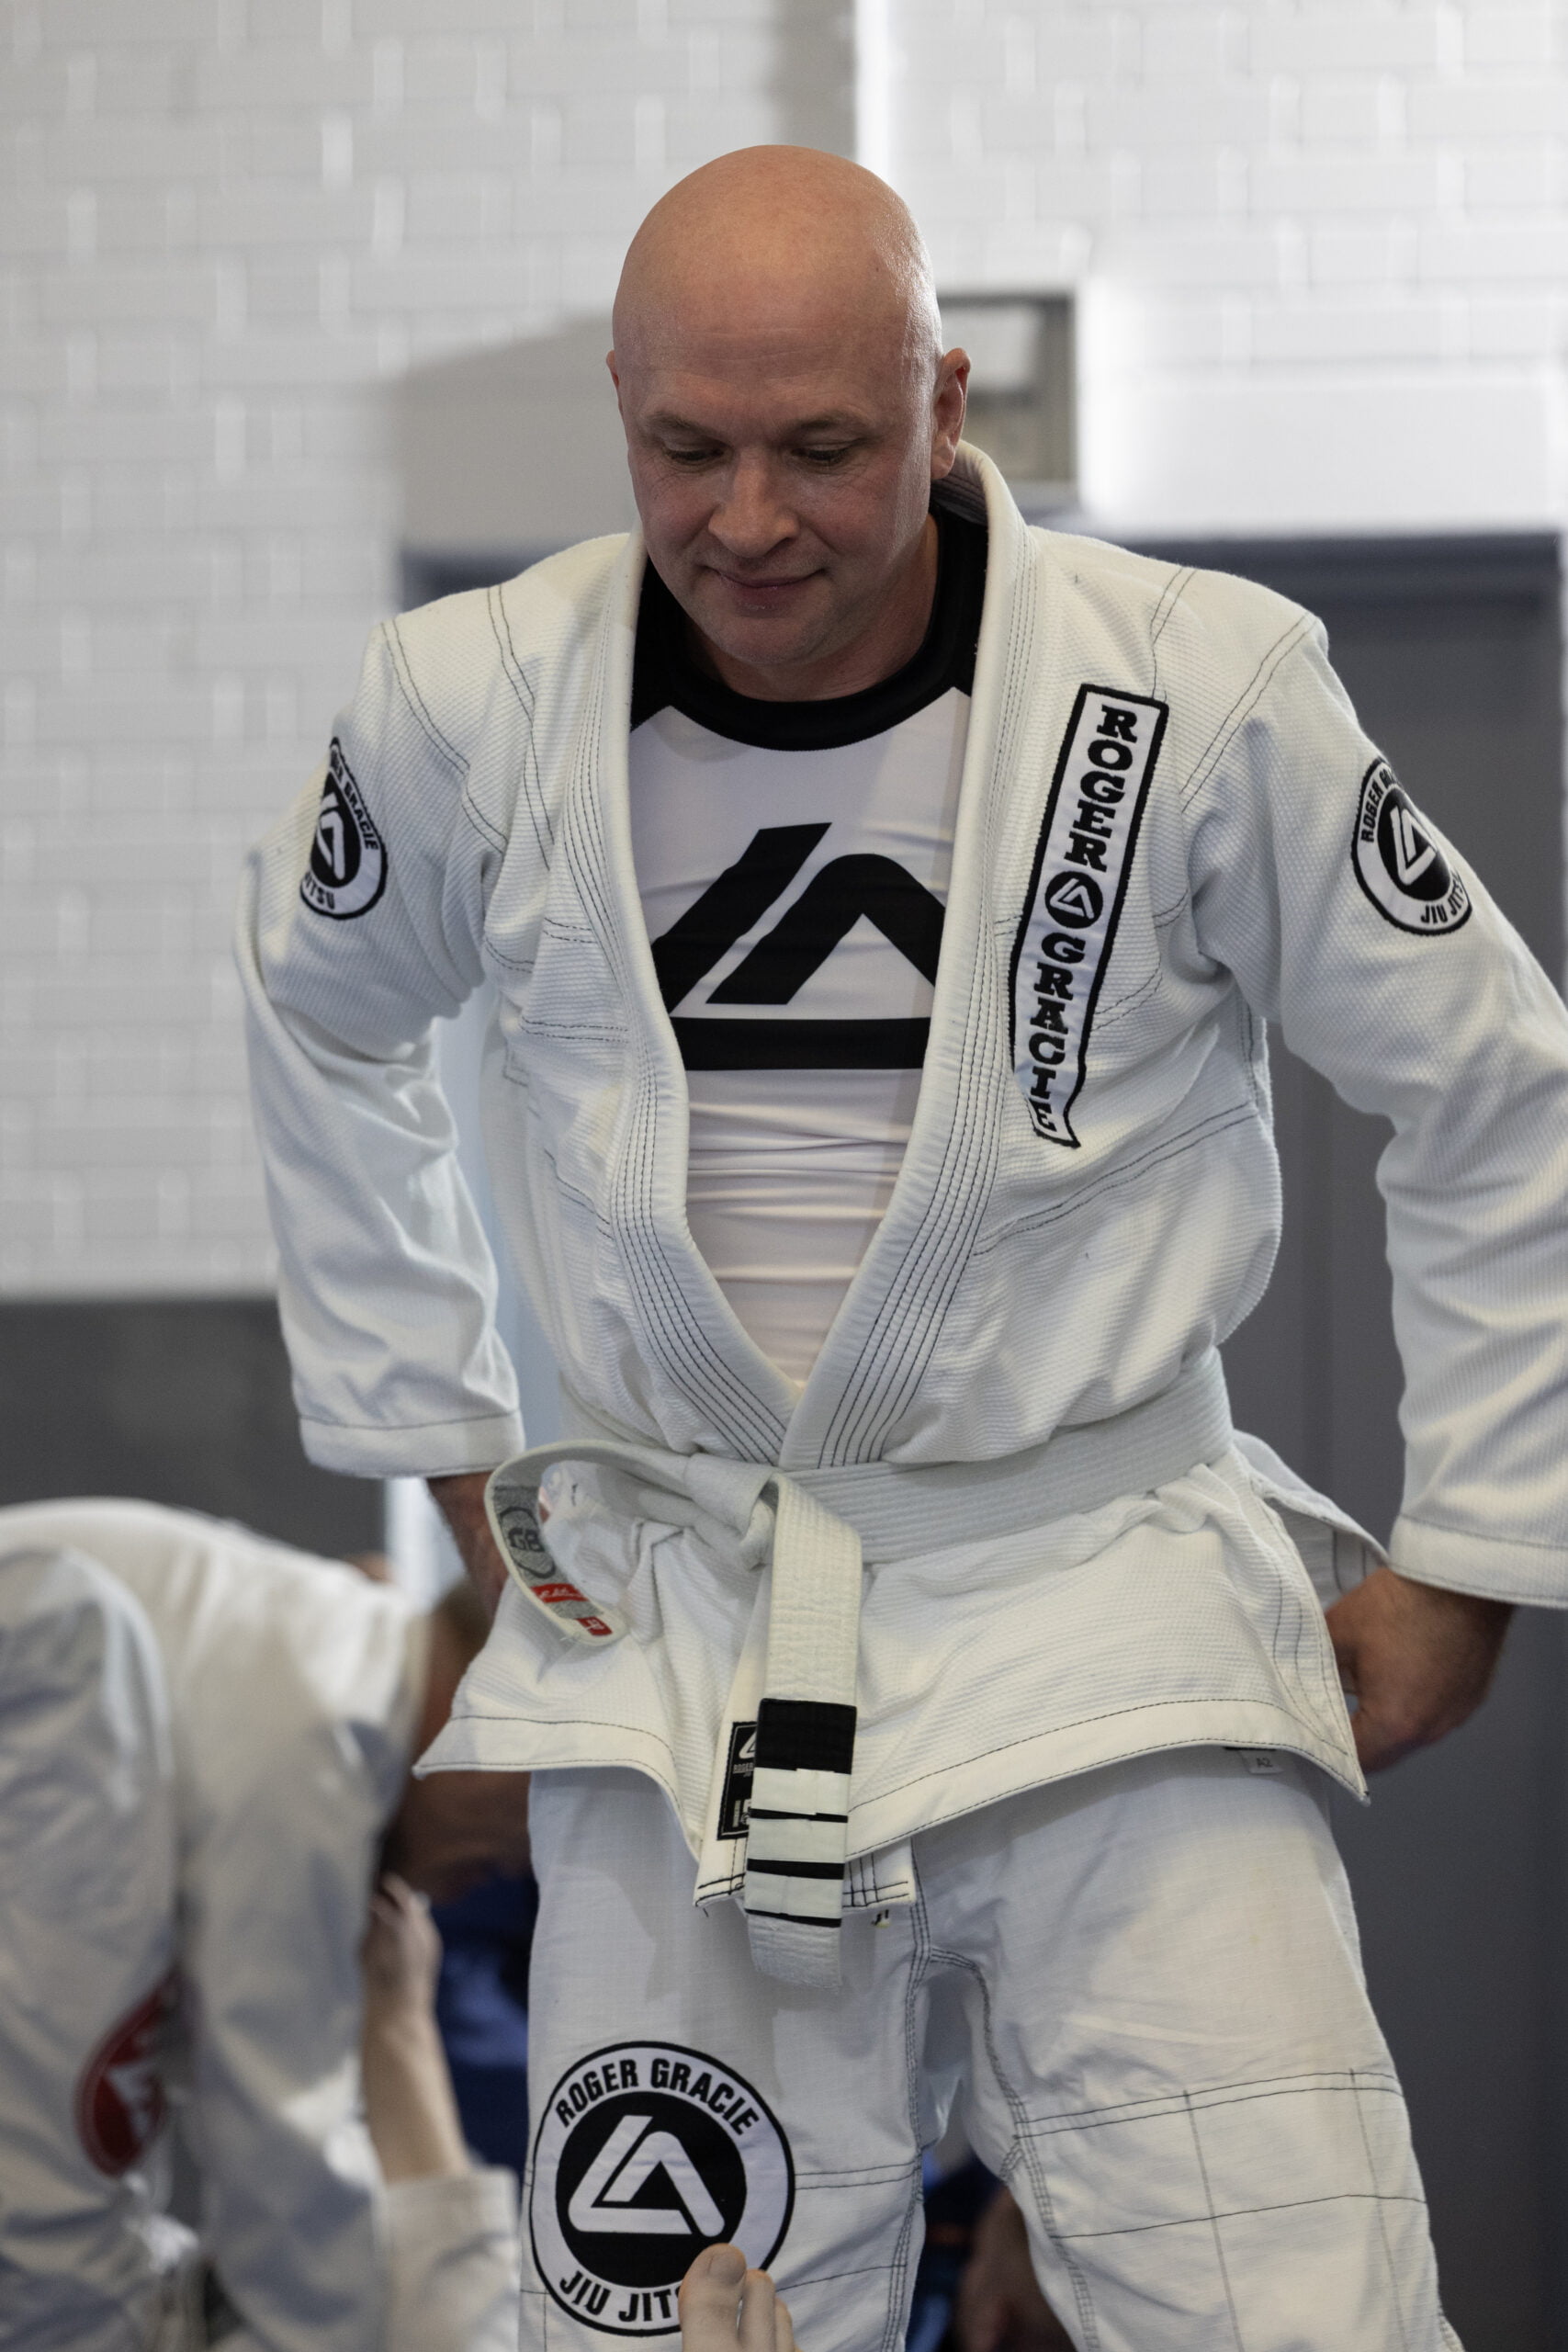 Roger Gracie Bristol white belt adjusting his uniform.